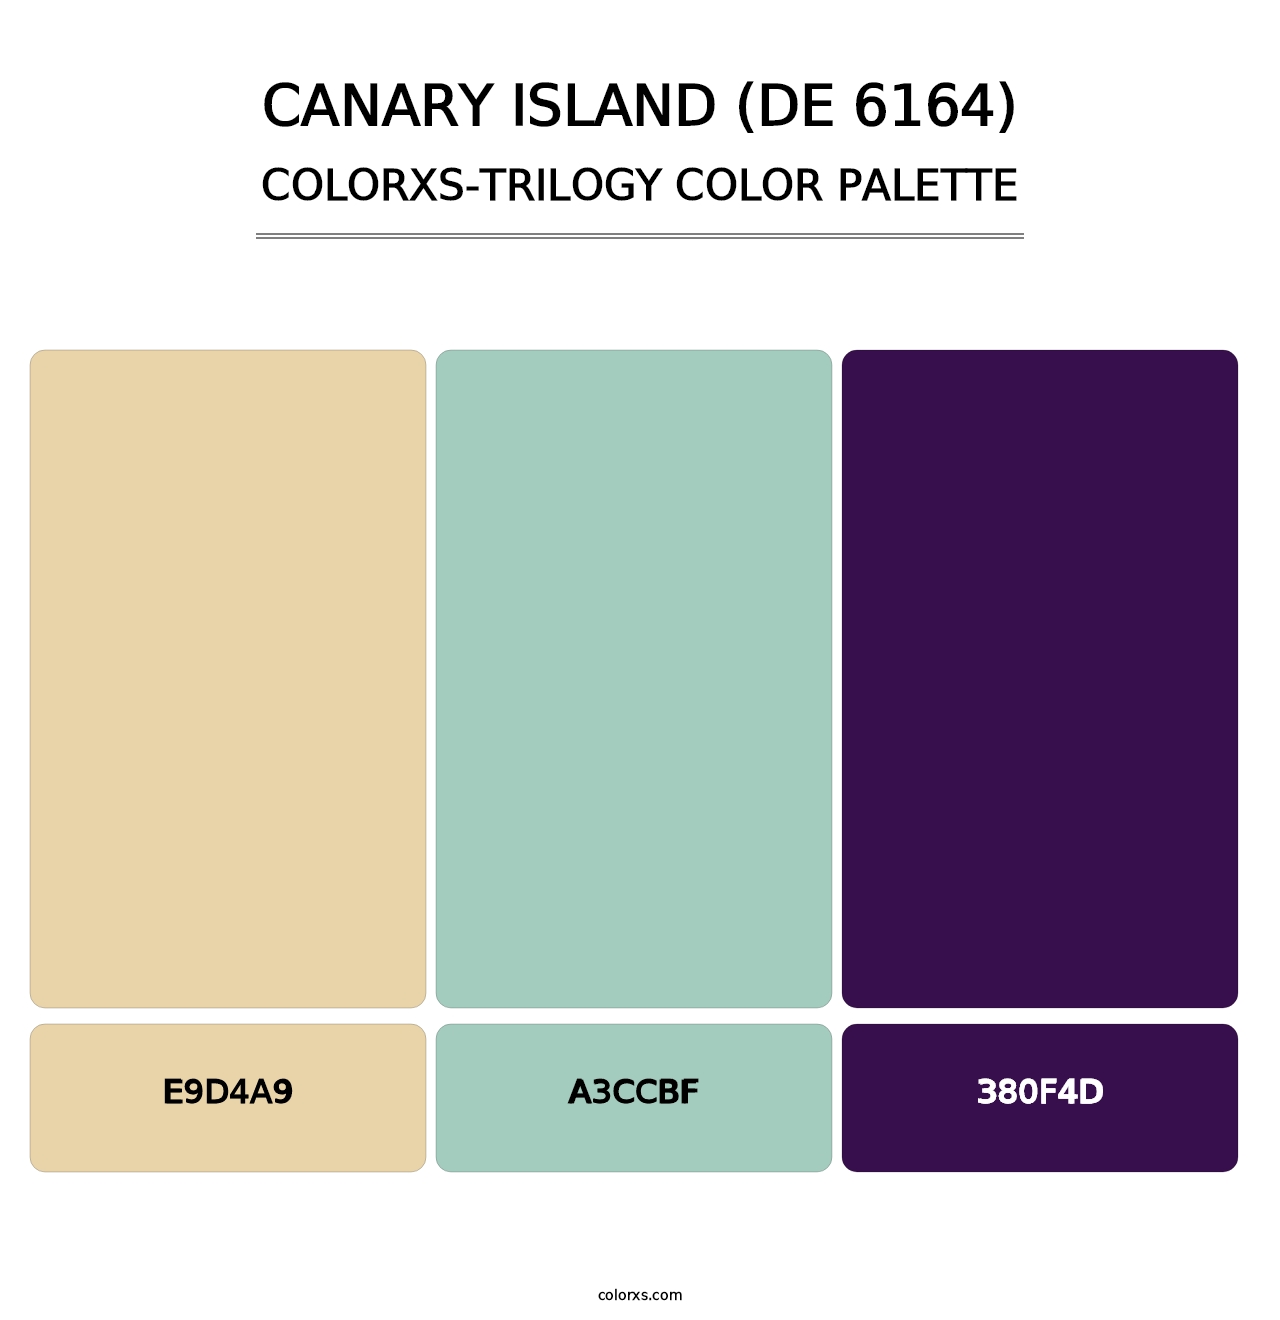 Canary Island (DE 6164) - Colorxs Trilogy Palette